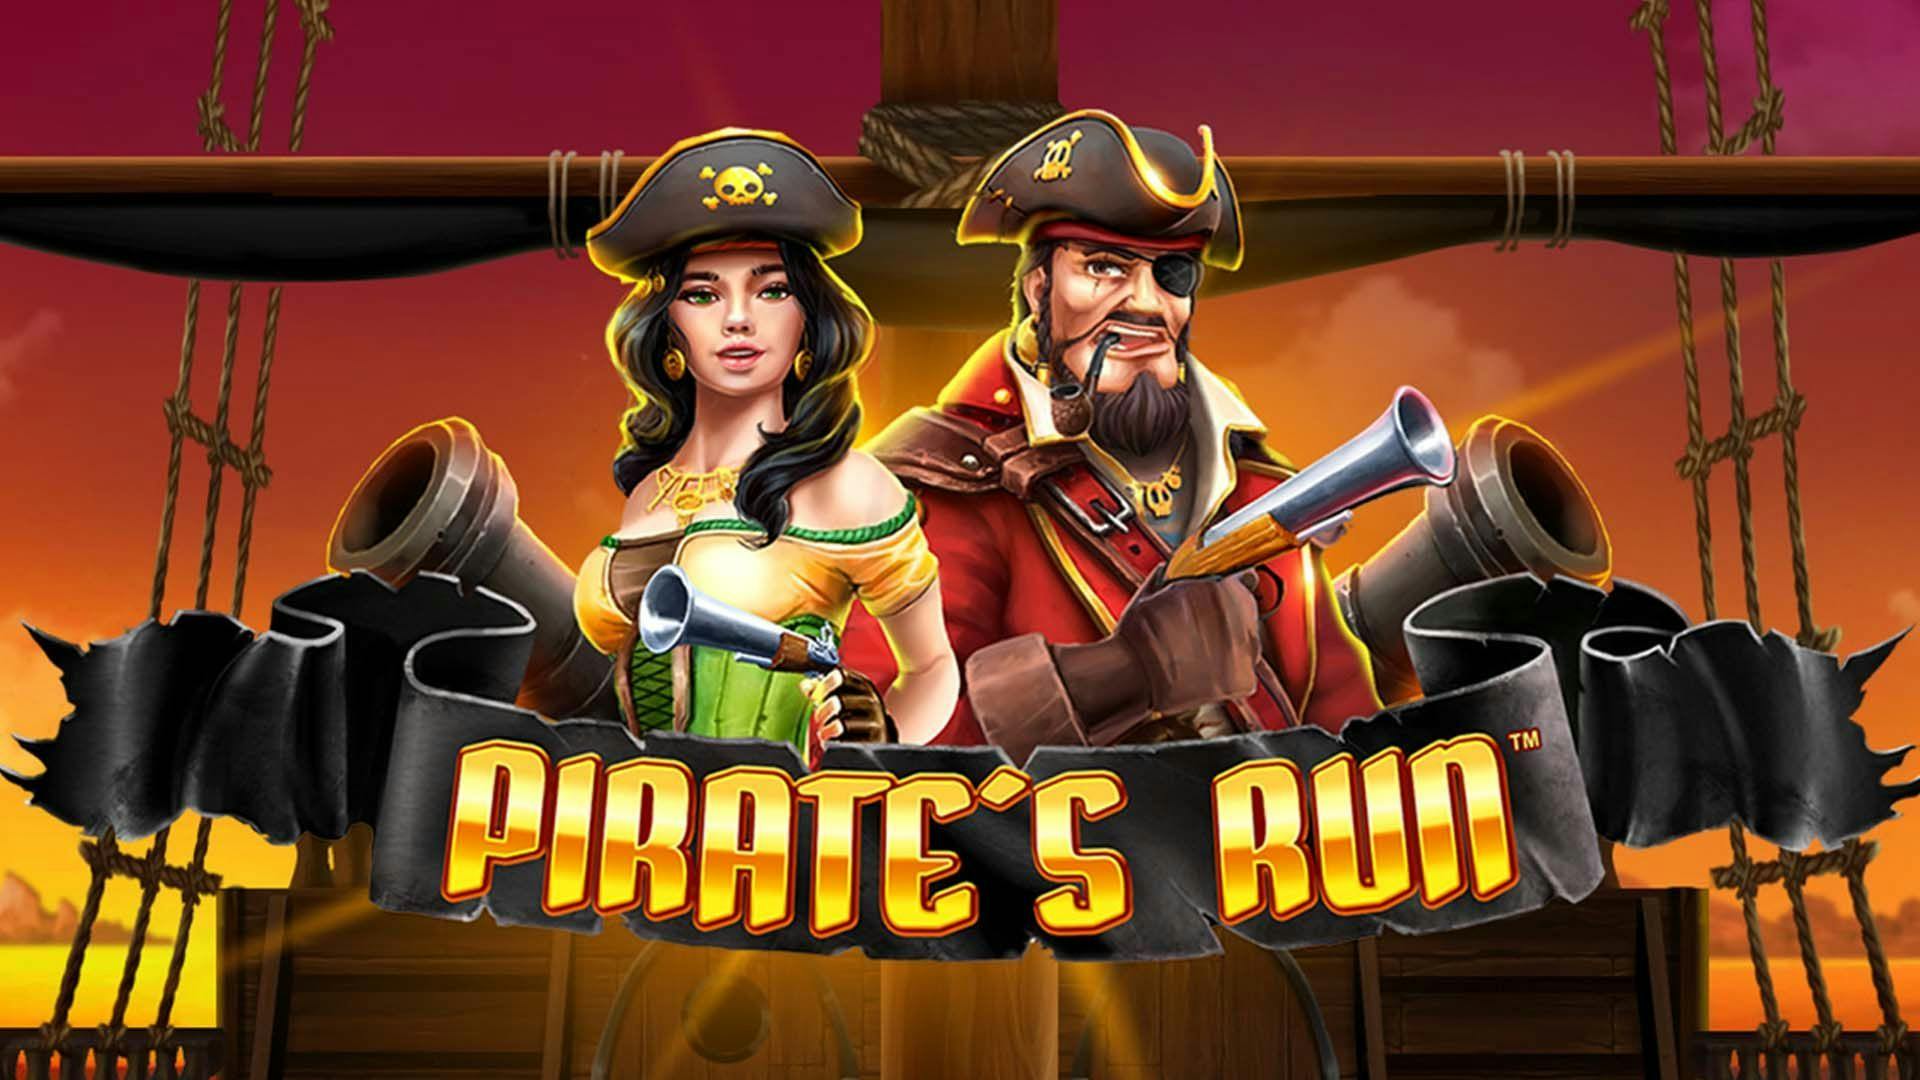 Pirate's Run Slot Machine Online Free Game Play